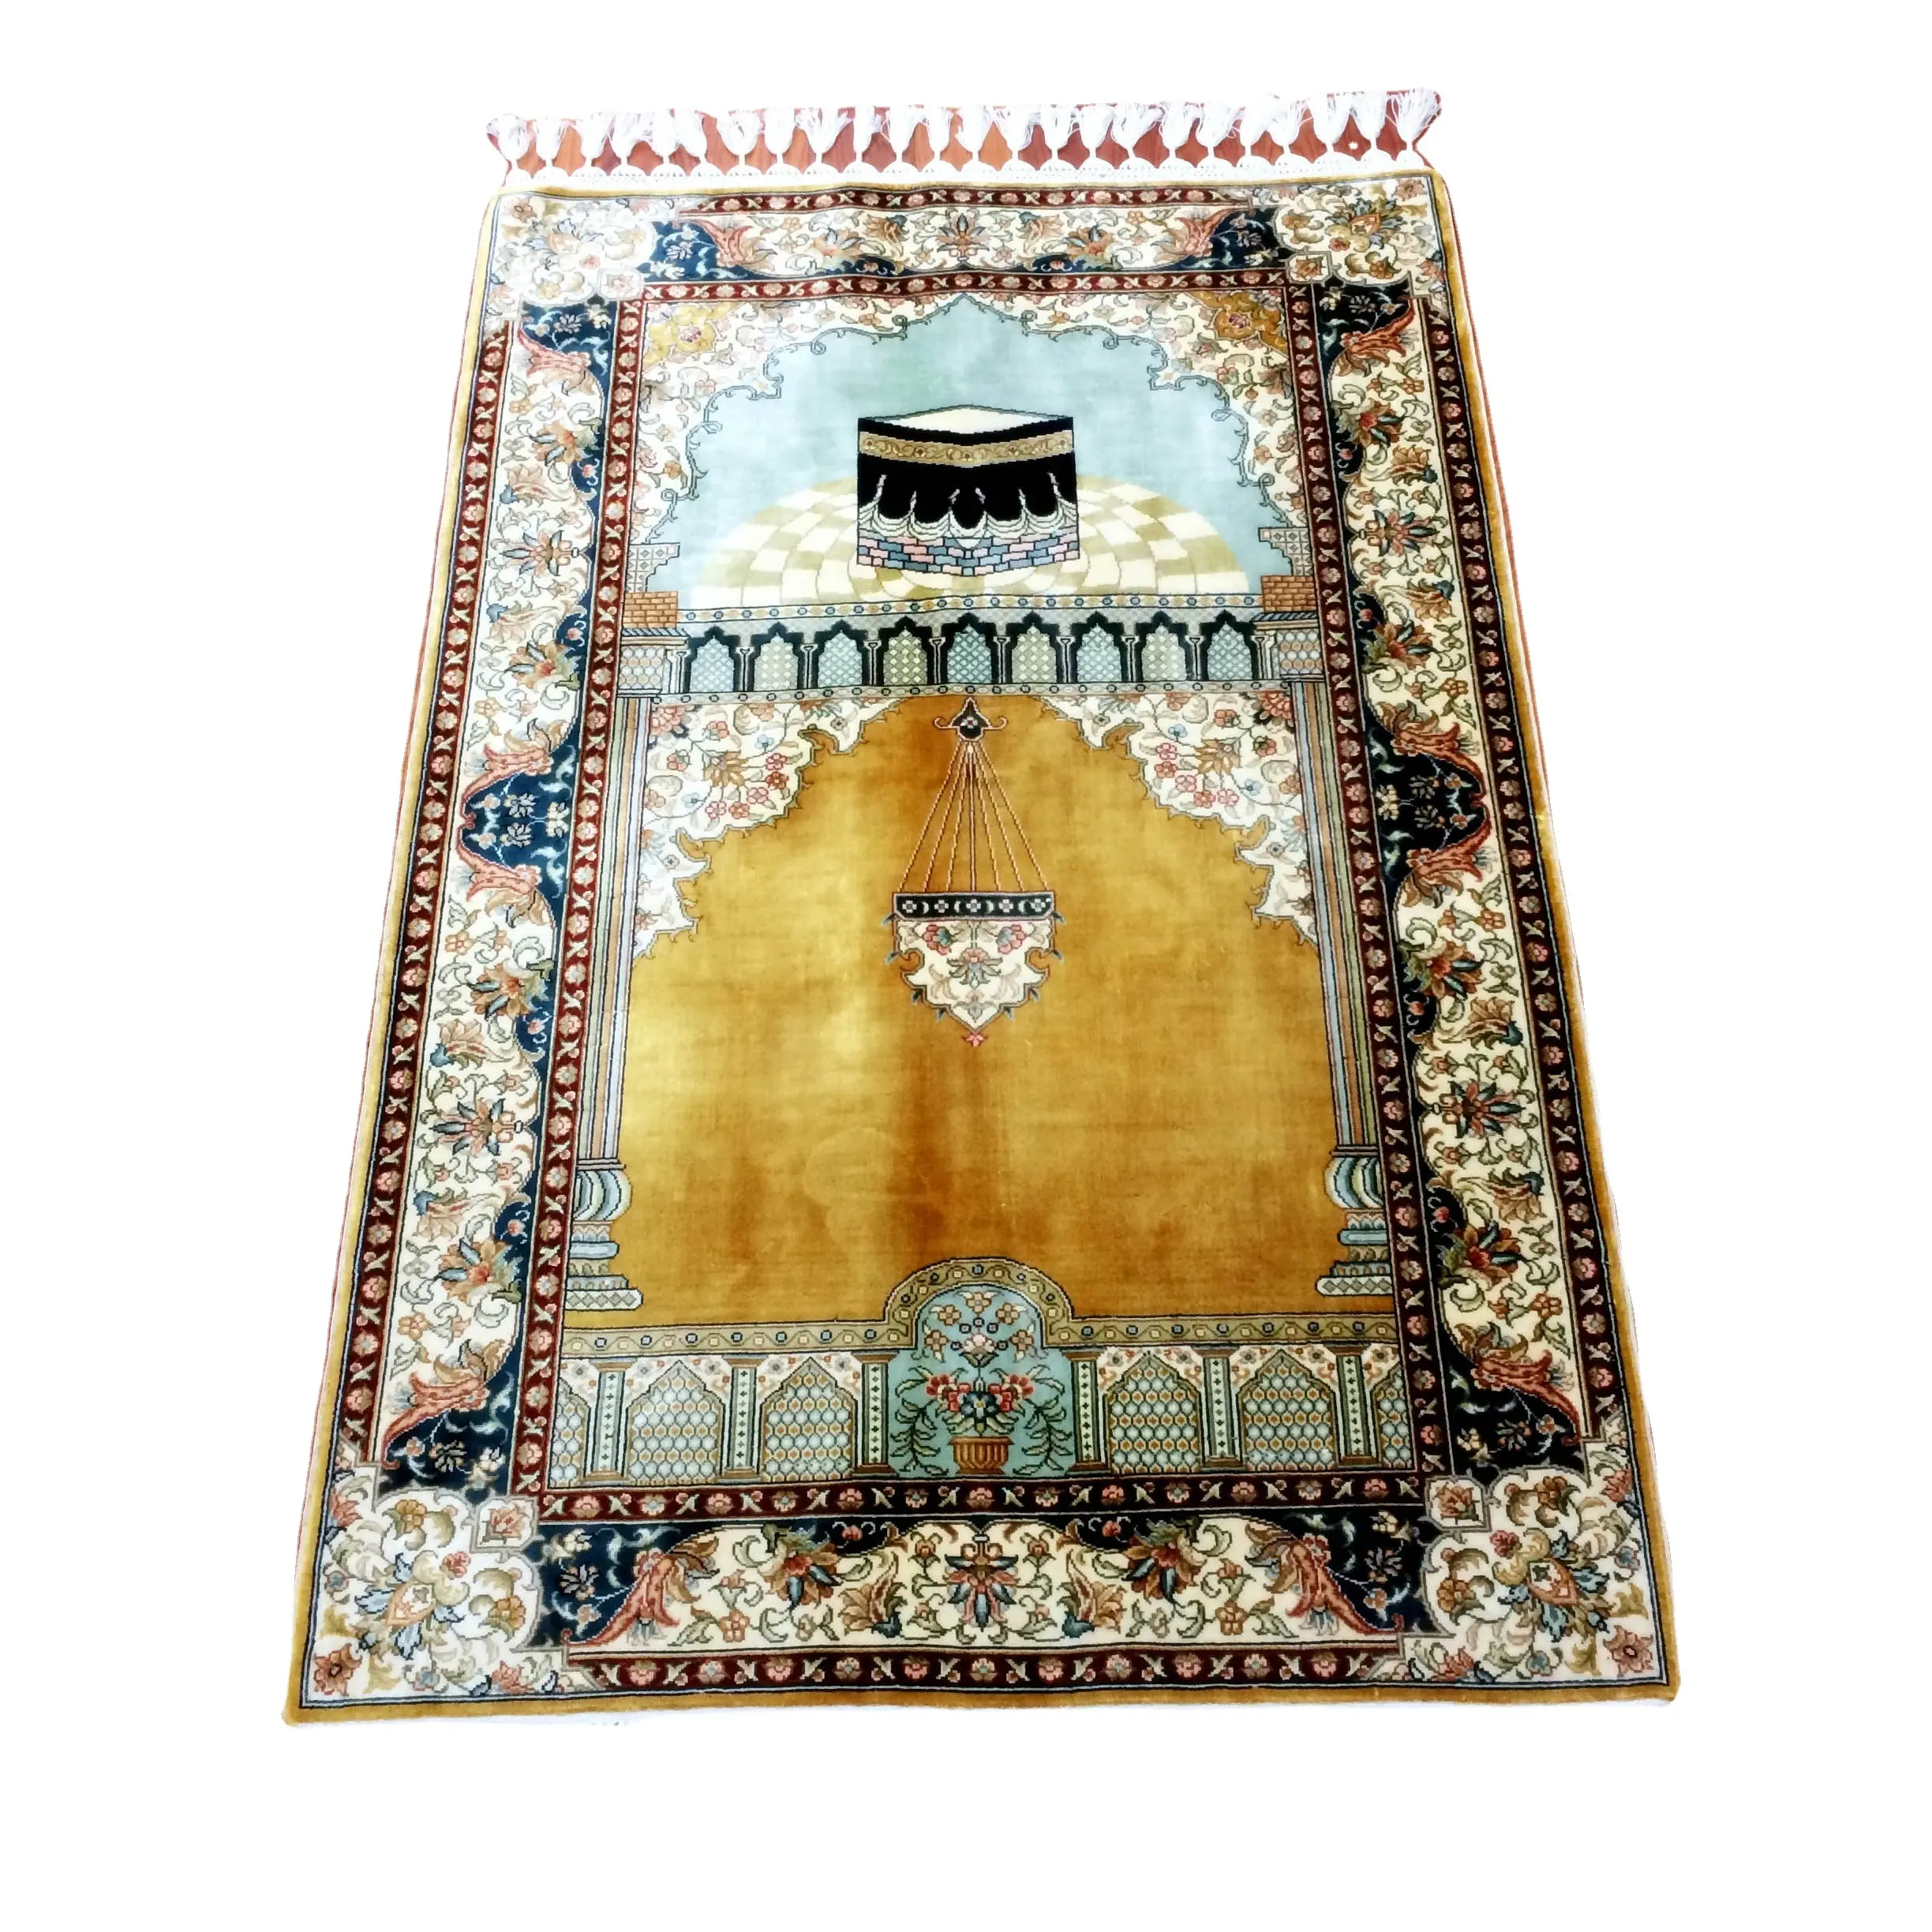 Miniatur Murah Kualitas Tinggi Rajutan Tangan Sutra Mesjid Buatan Tangan Karpet Muslim Turki Karpet Karpet